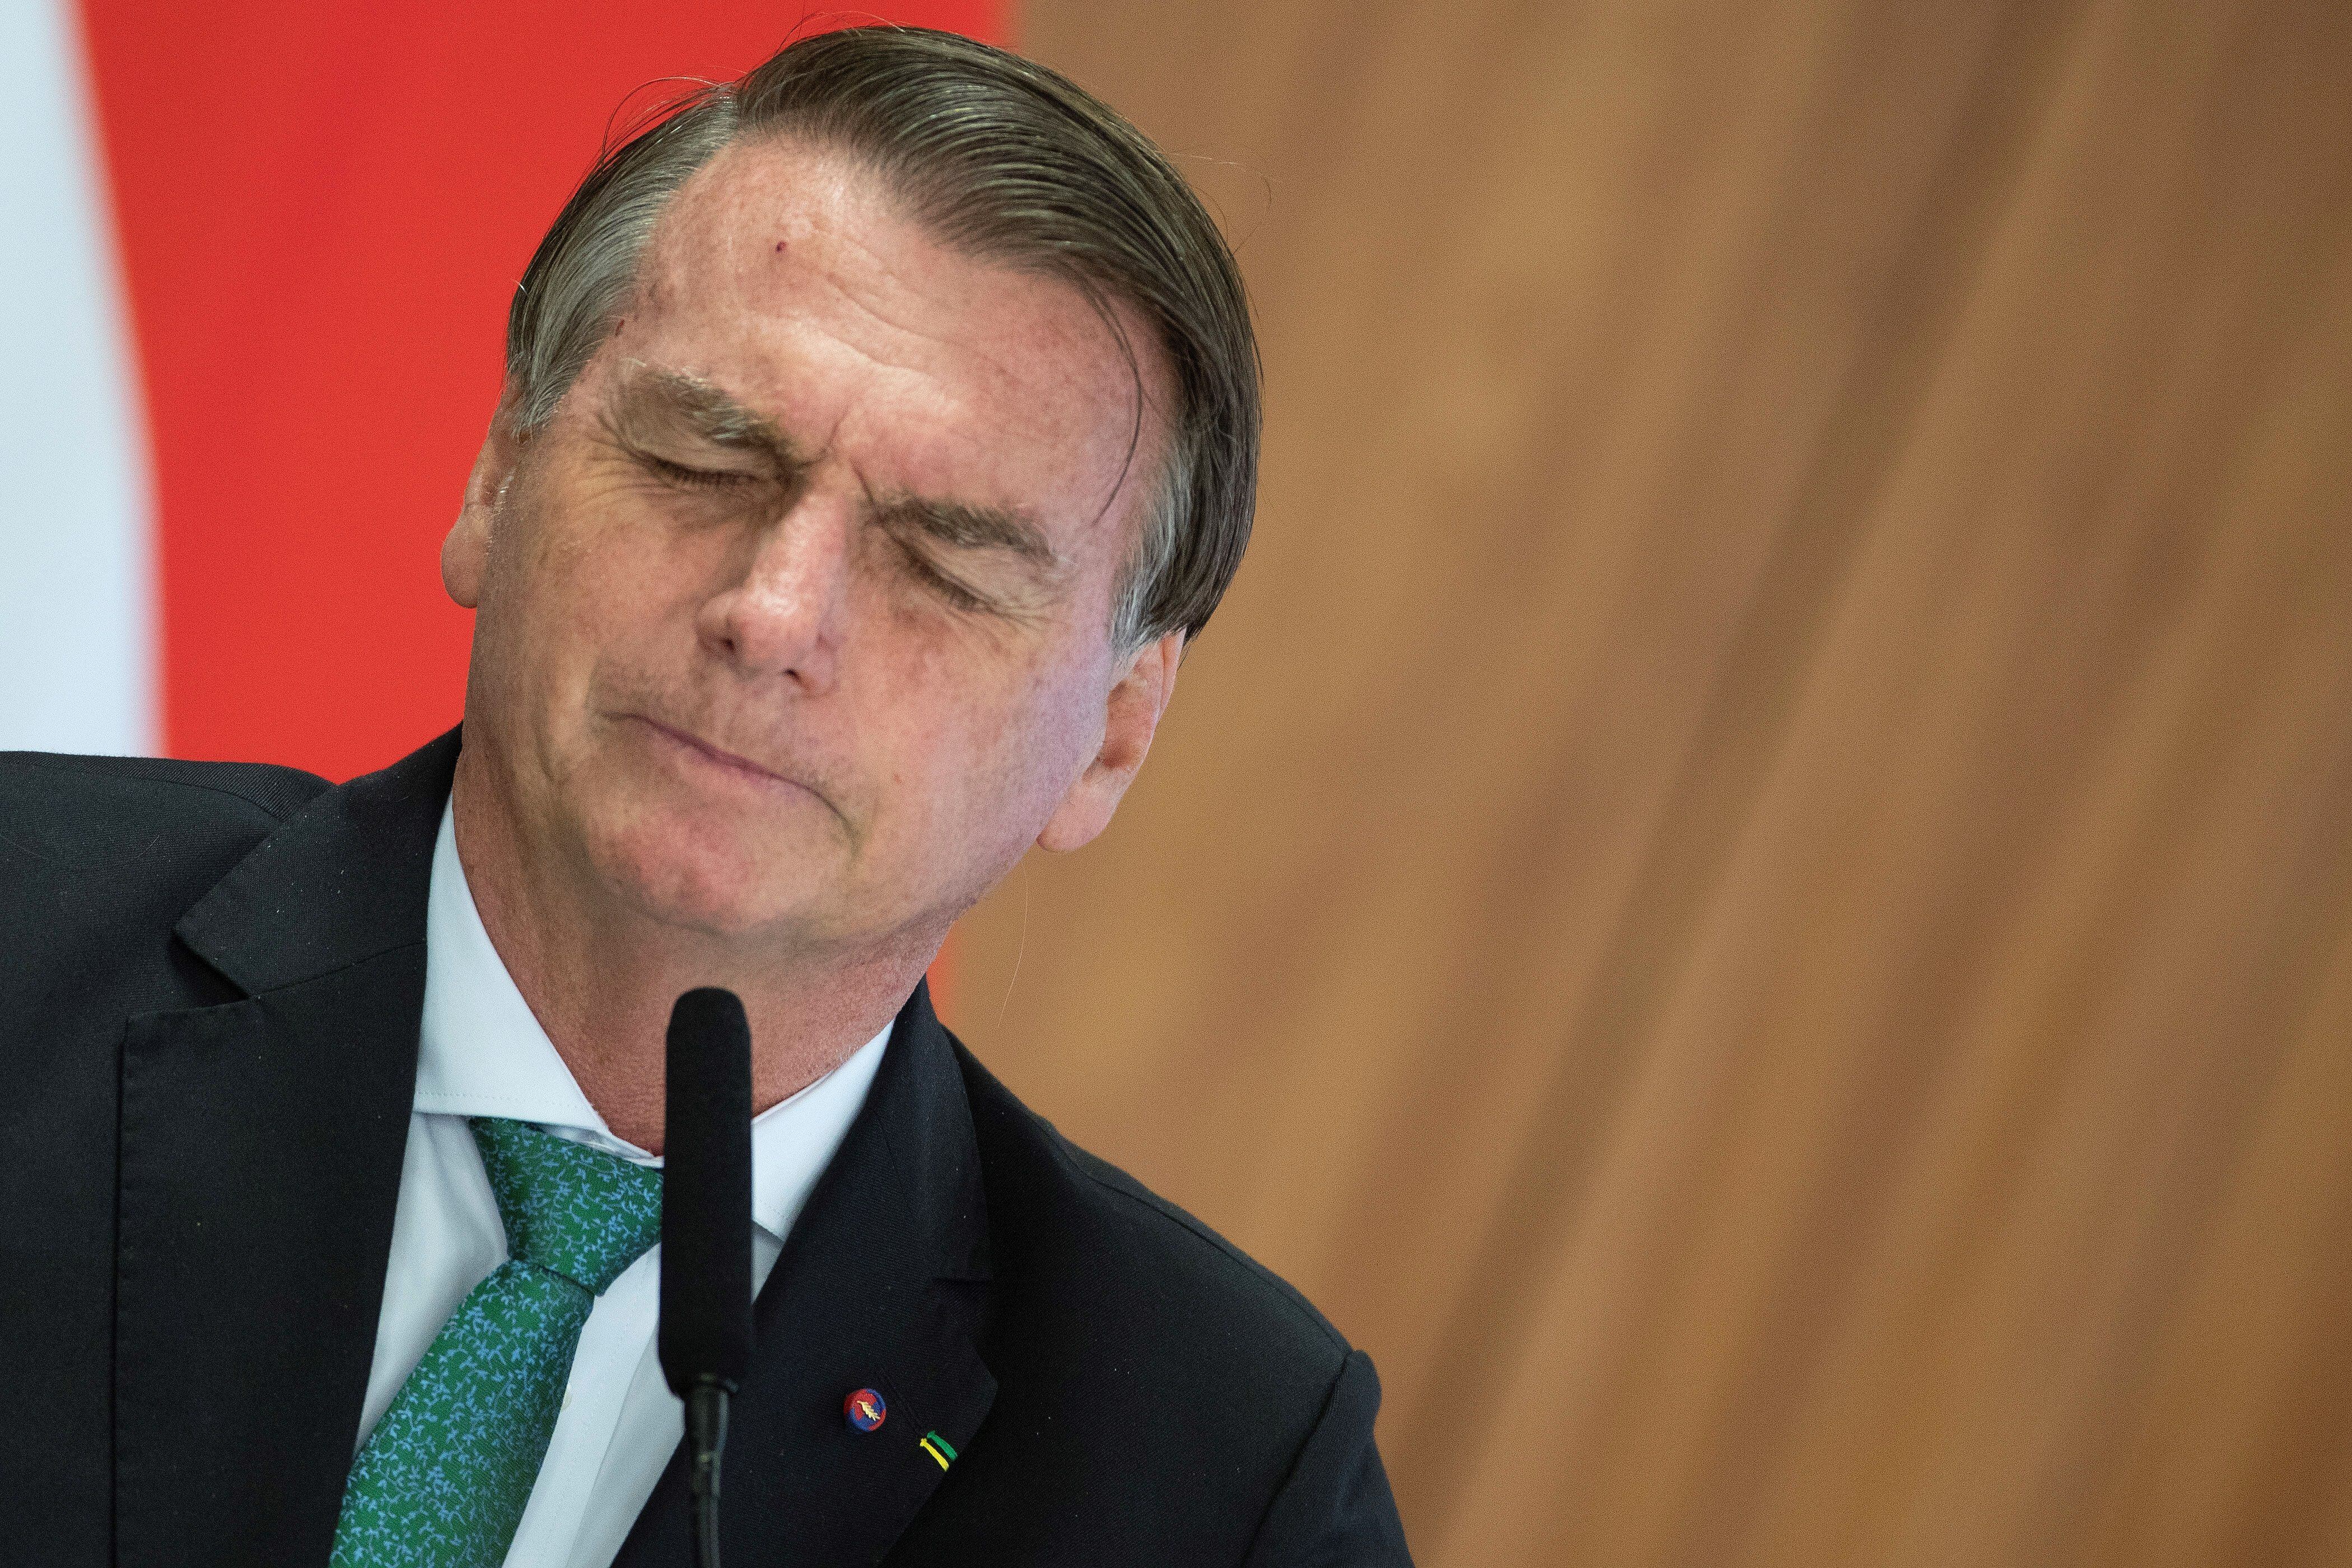 El presidente de Brasil, Jair Bolsonaro, en una fotografía de archivo. EFE/Joédson Alves